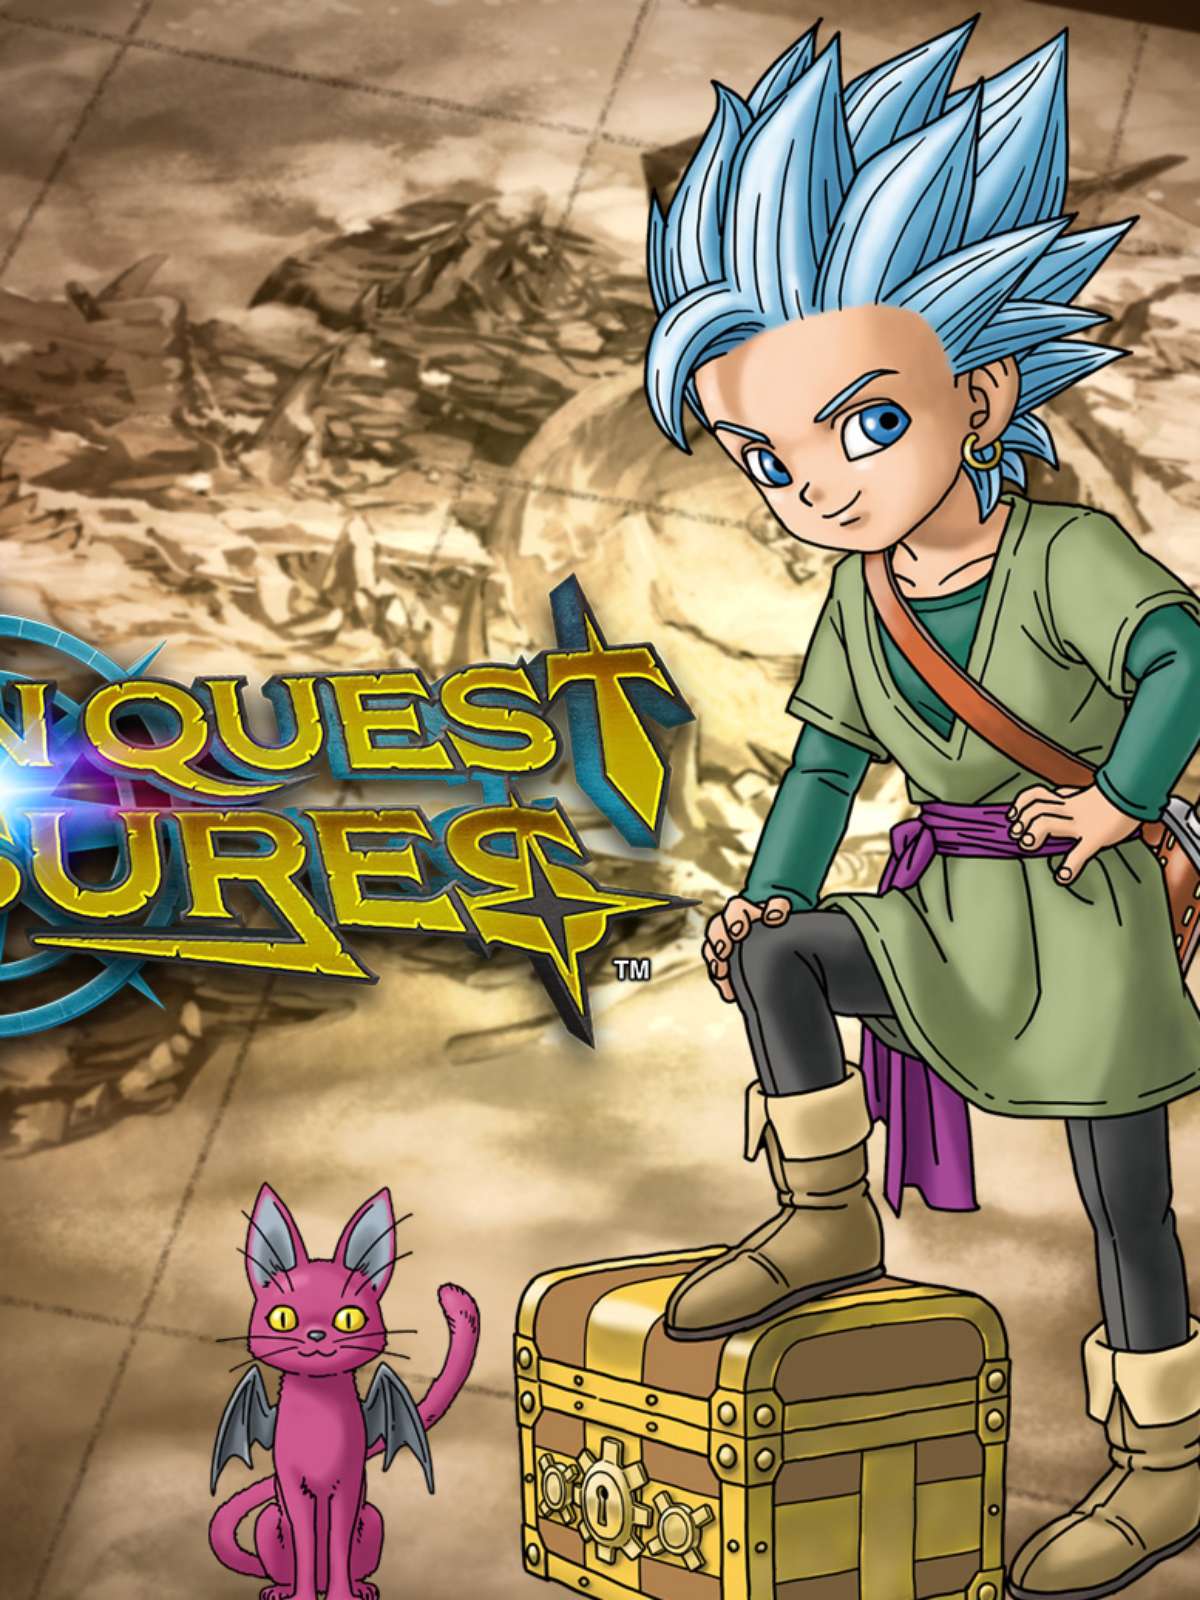 Baralho de Dragon Quest é novo item comemorativo